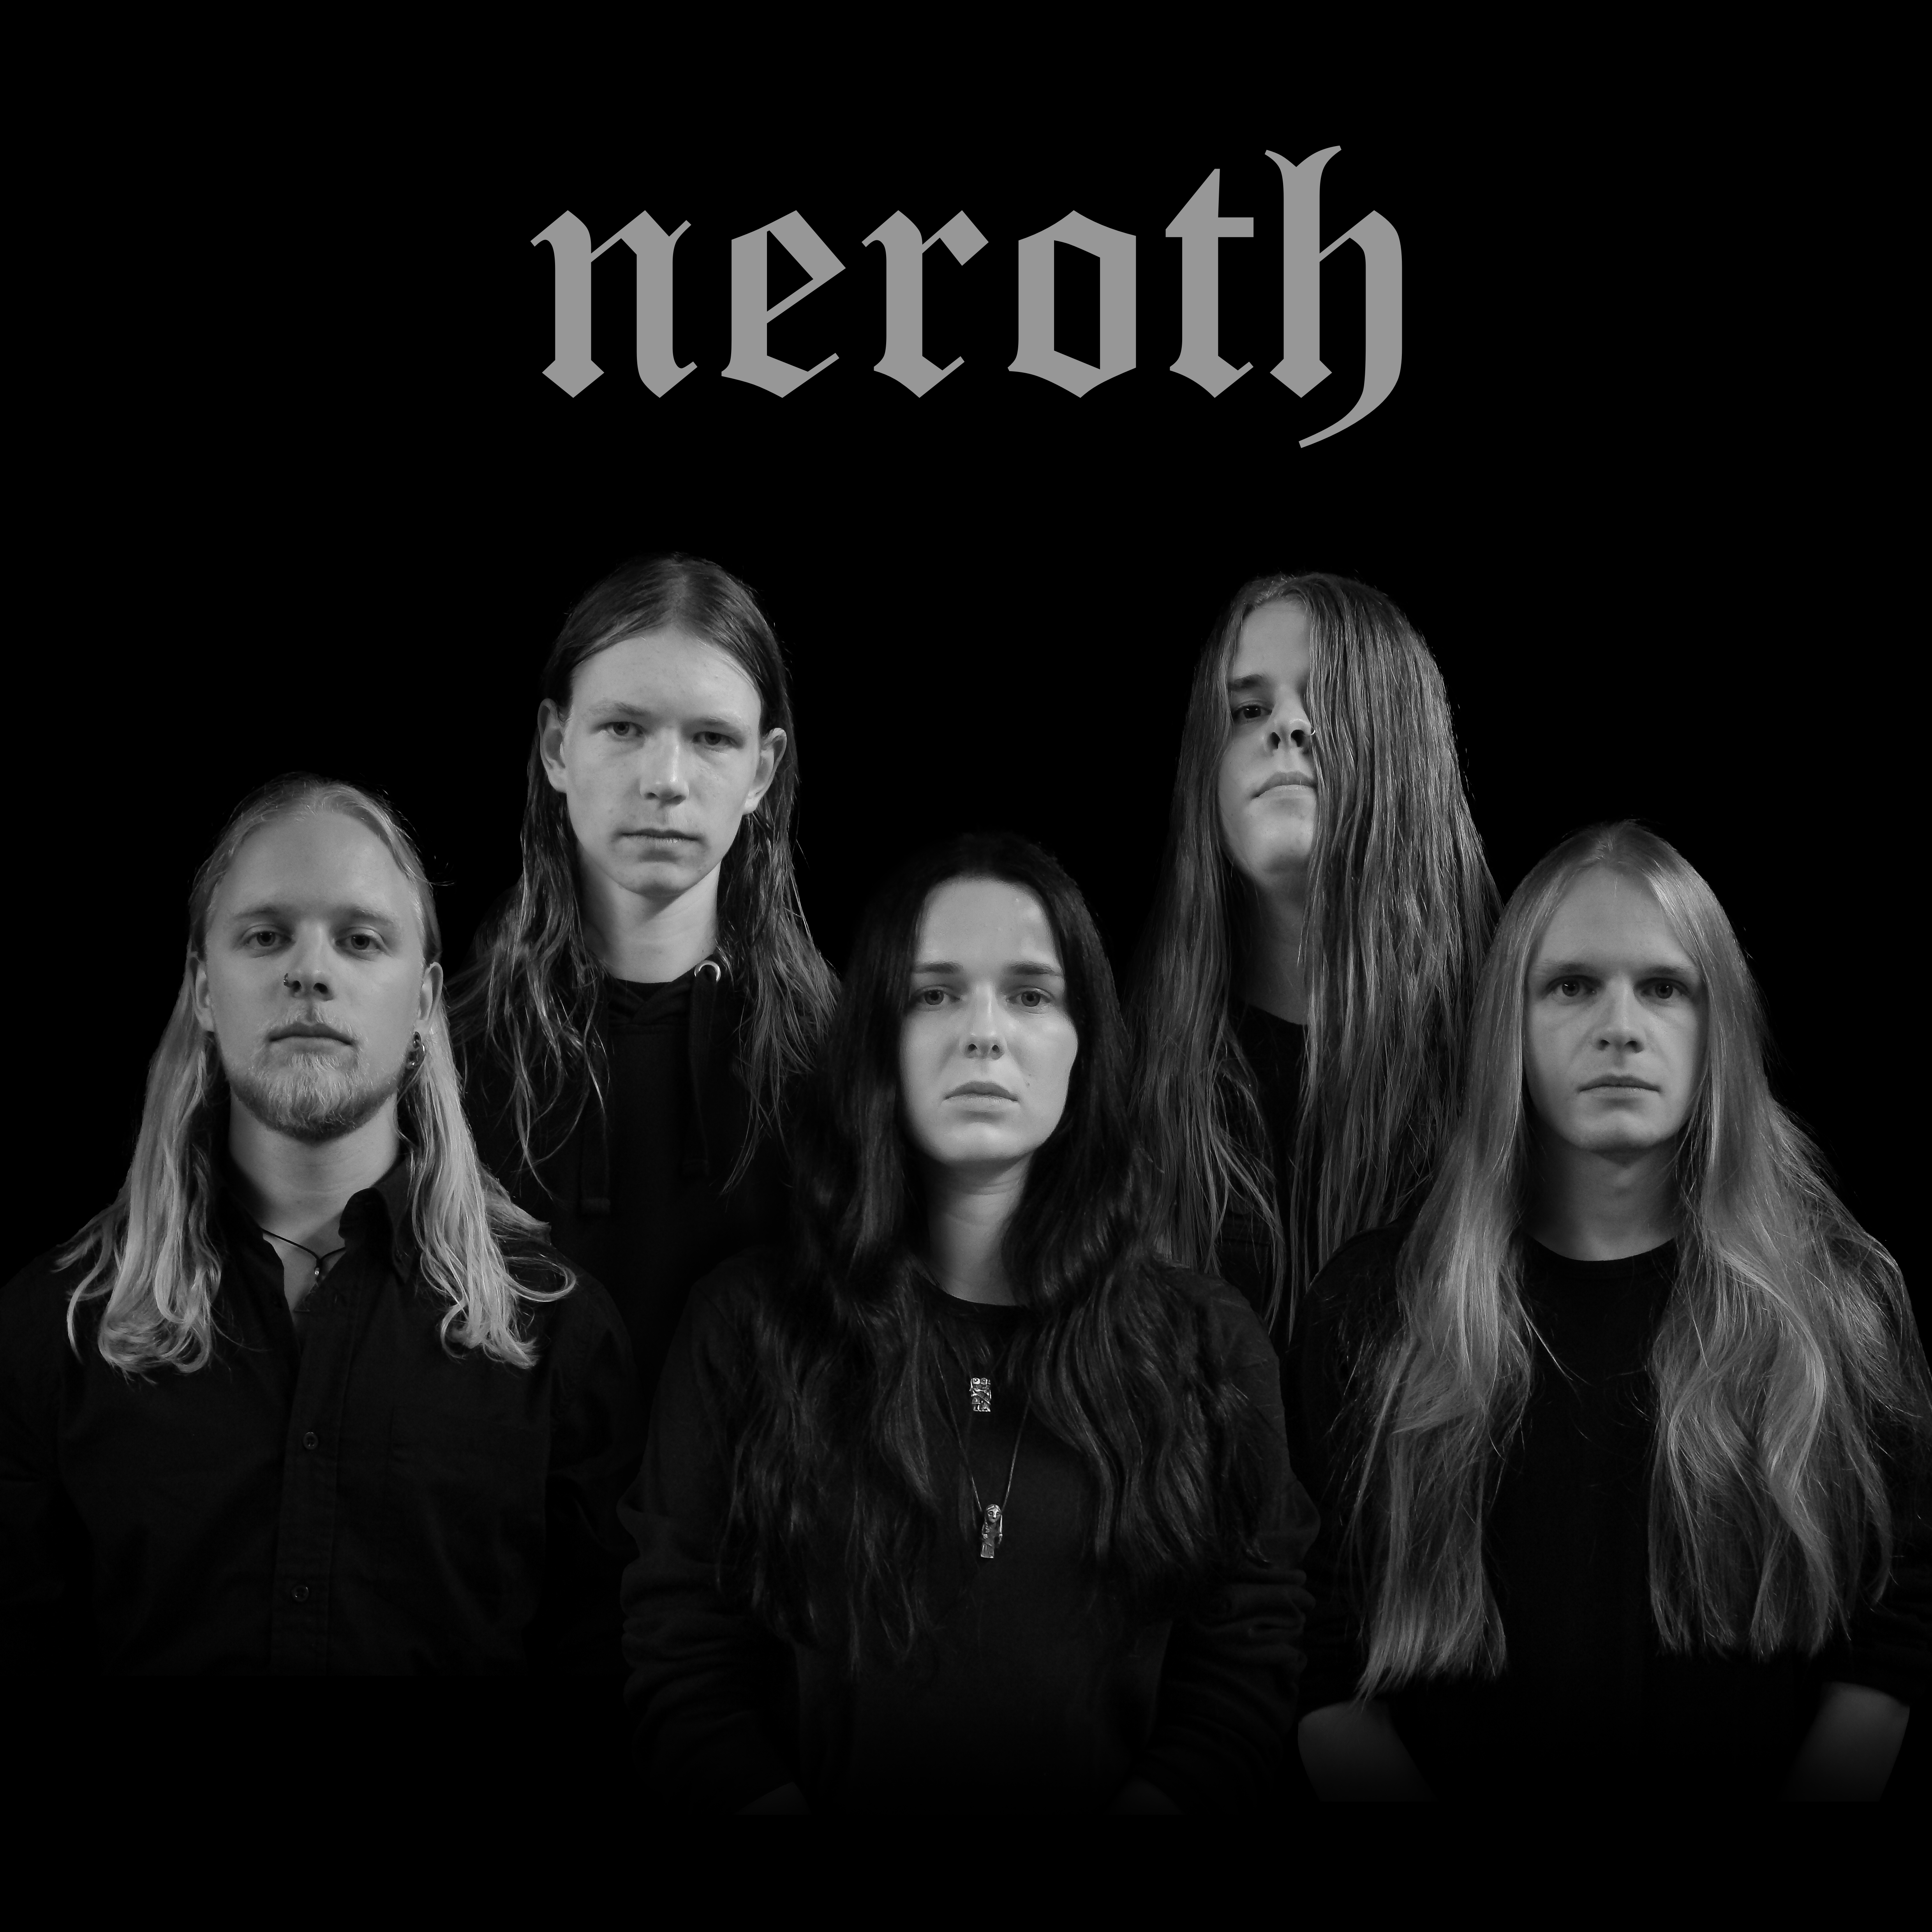 Neroth